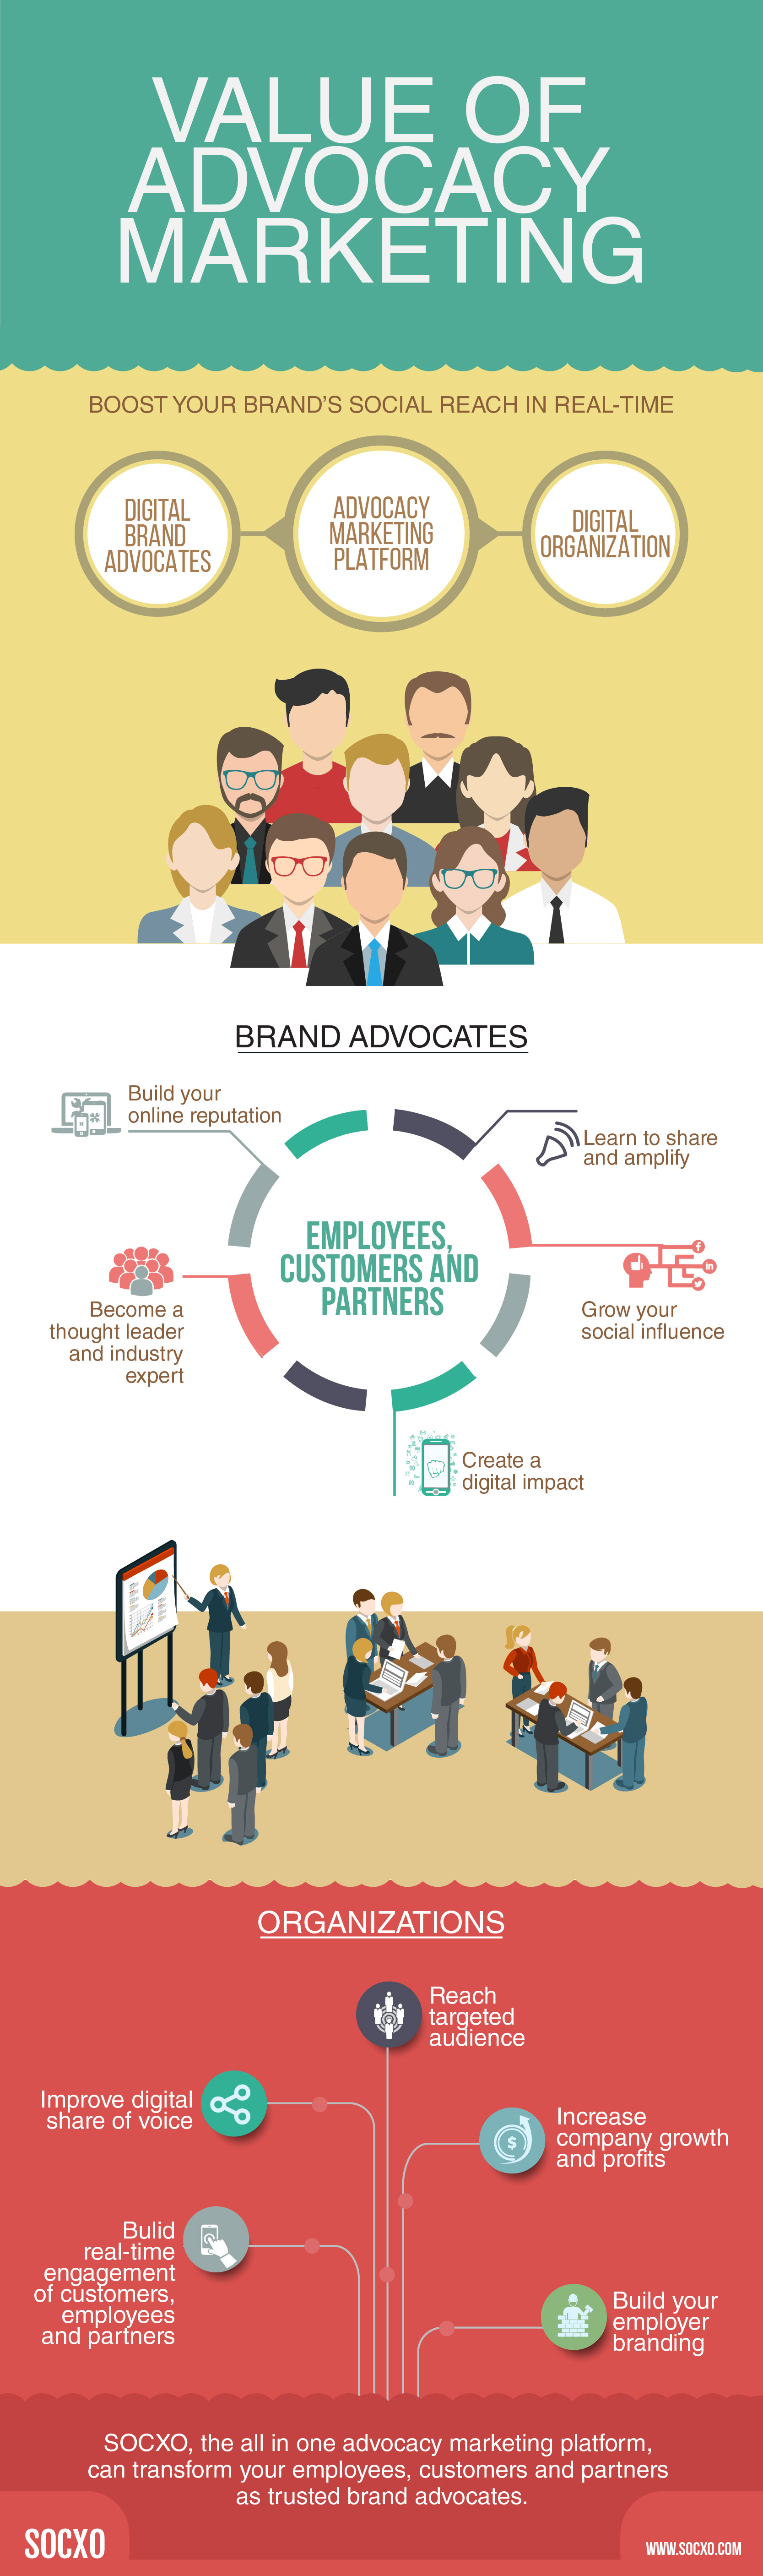 Advocacy Marketing Values